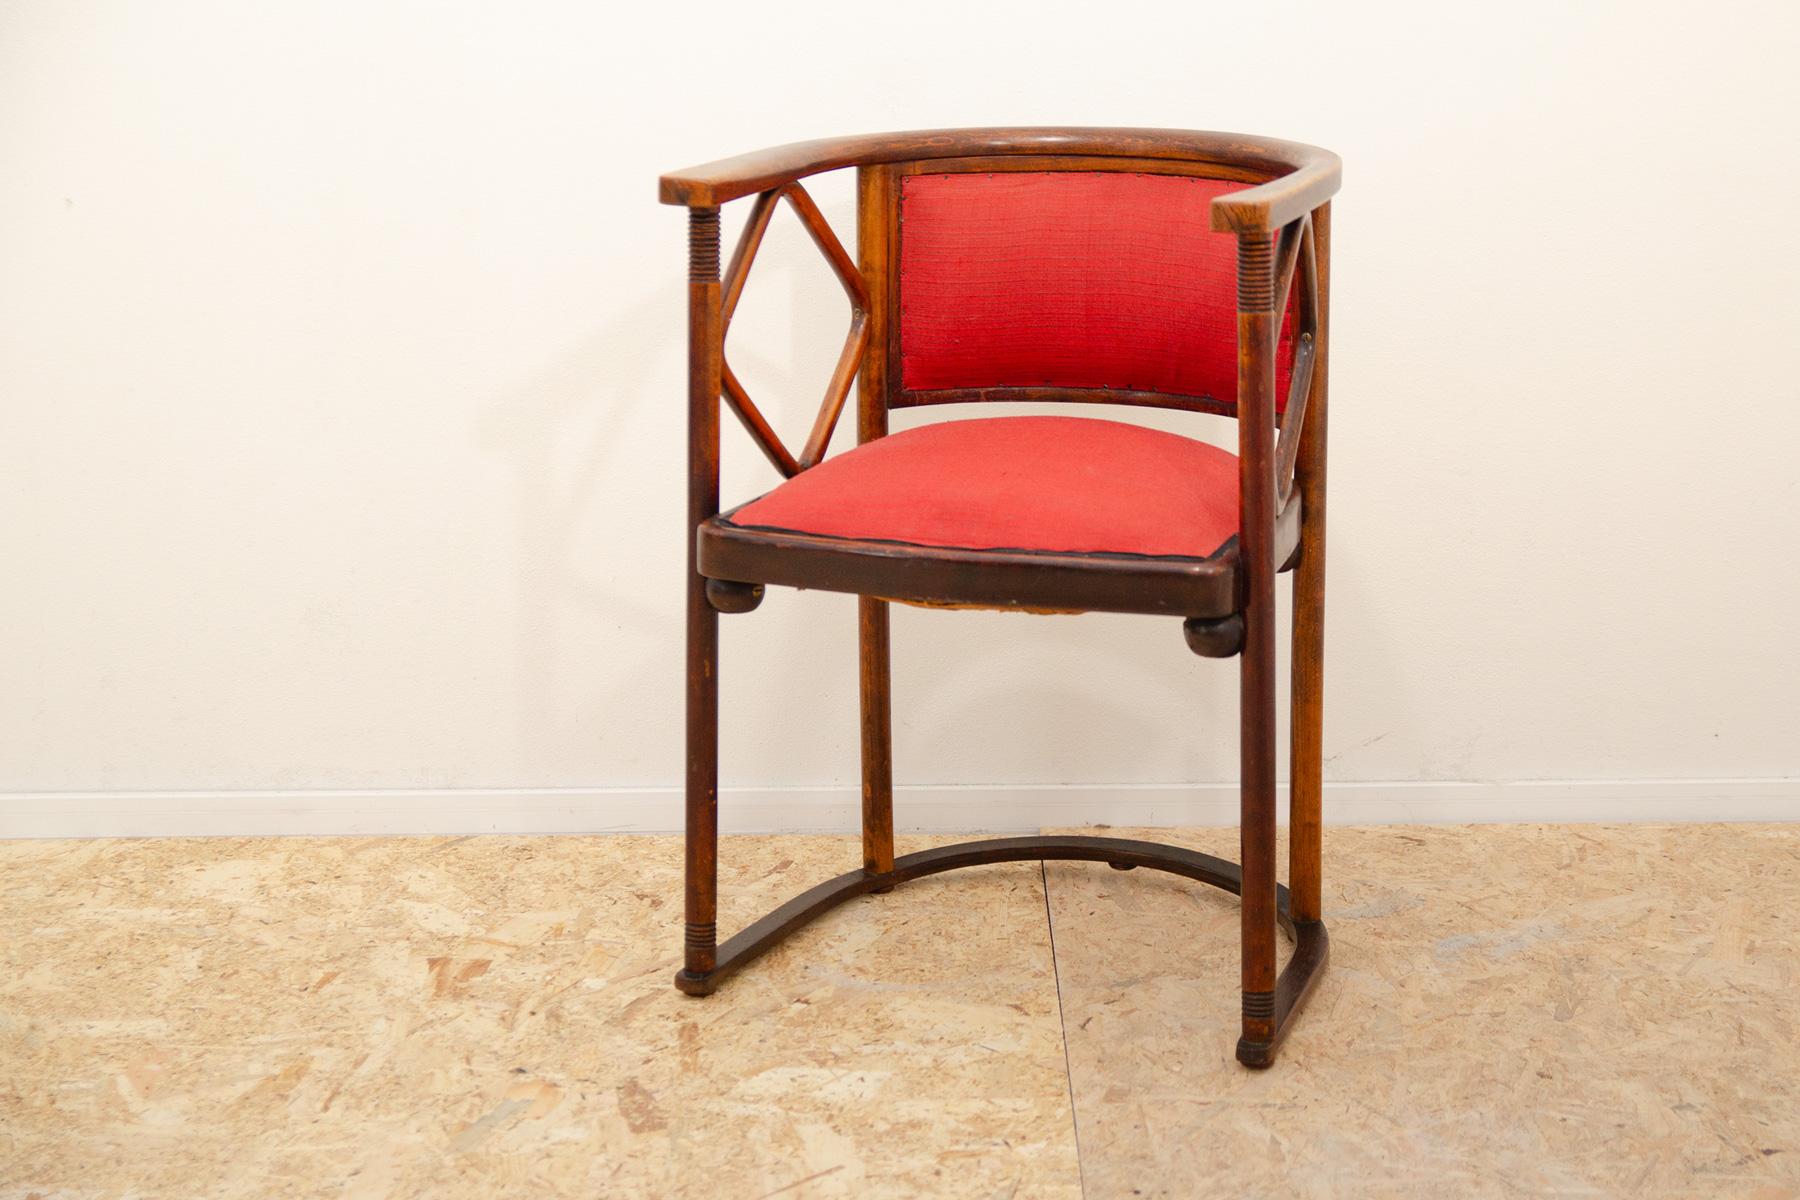 Cette chaise en bois courbé rembourrée, célèbre dans le monde entier, a été conçue par Josef Hoffmann pour le cabaret 